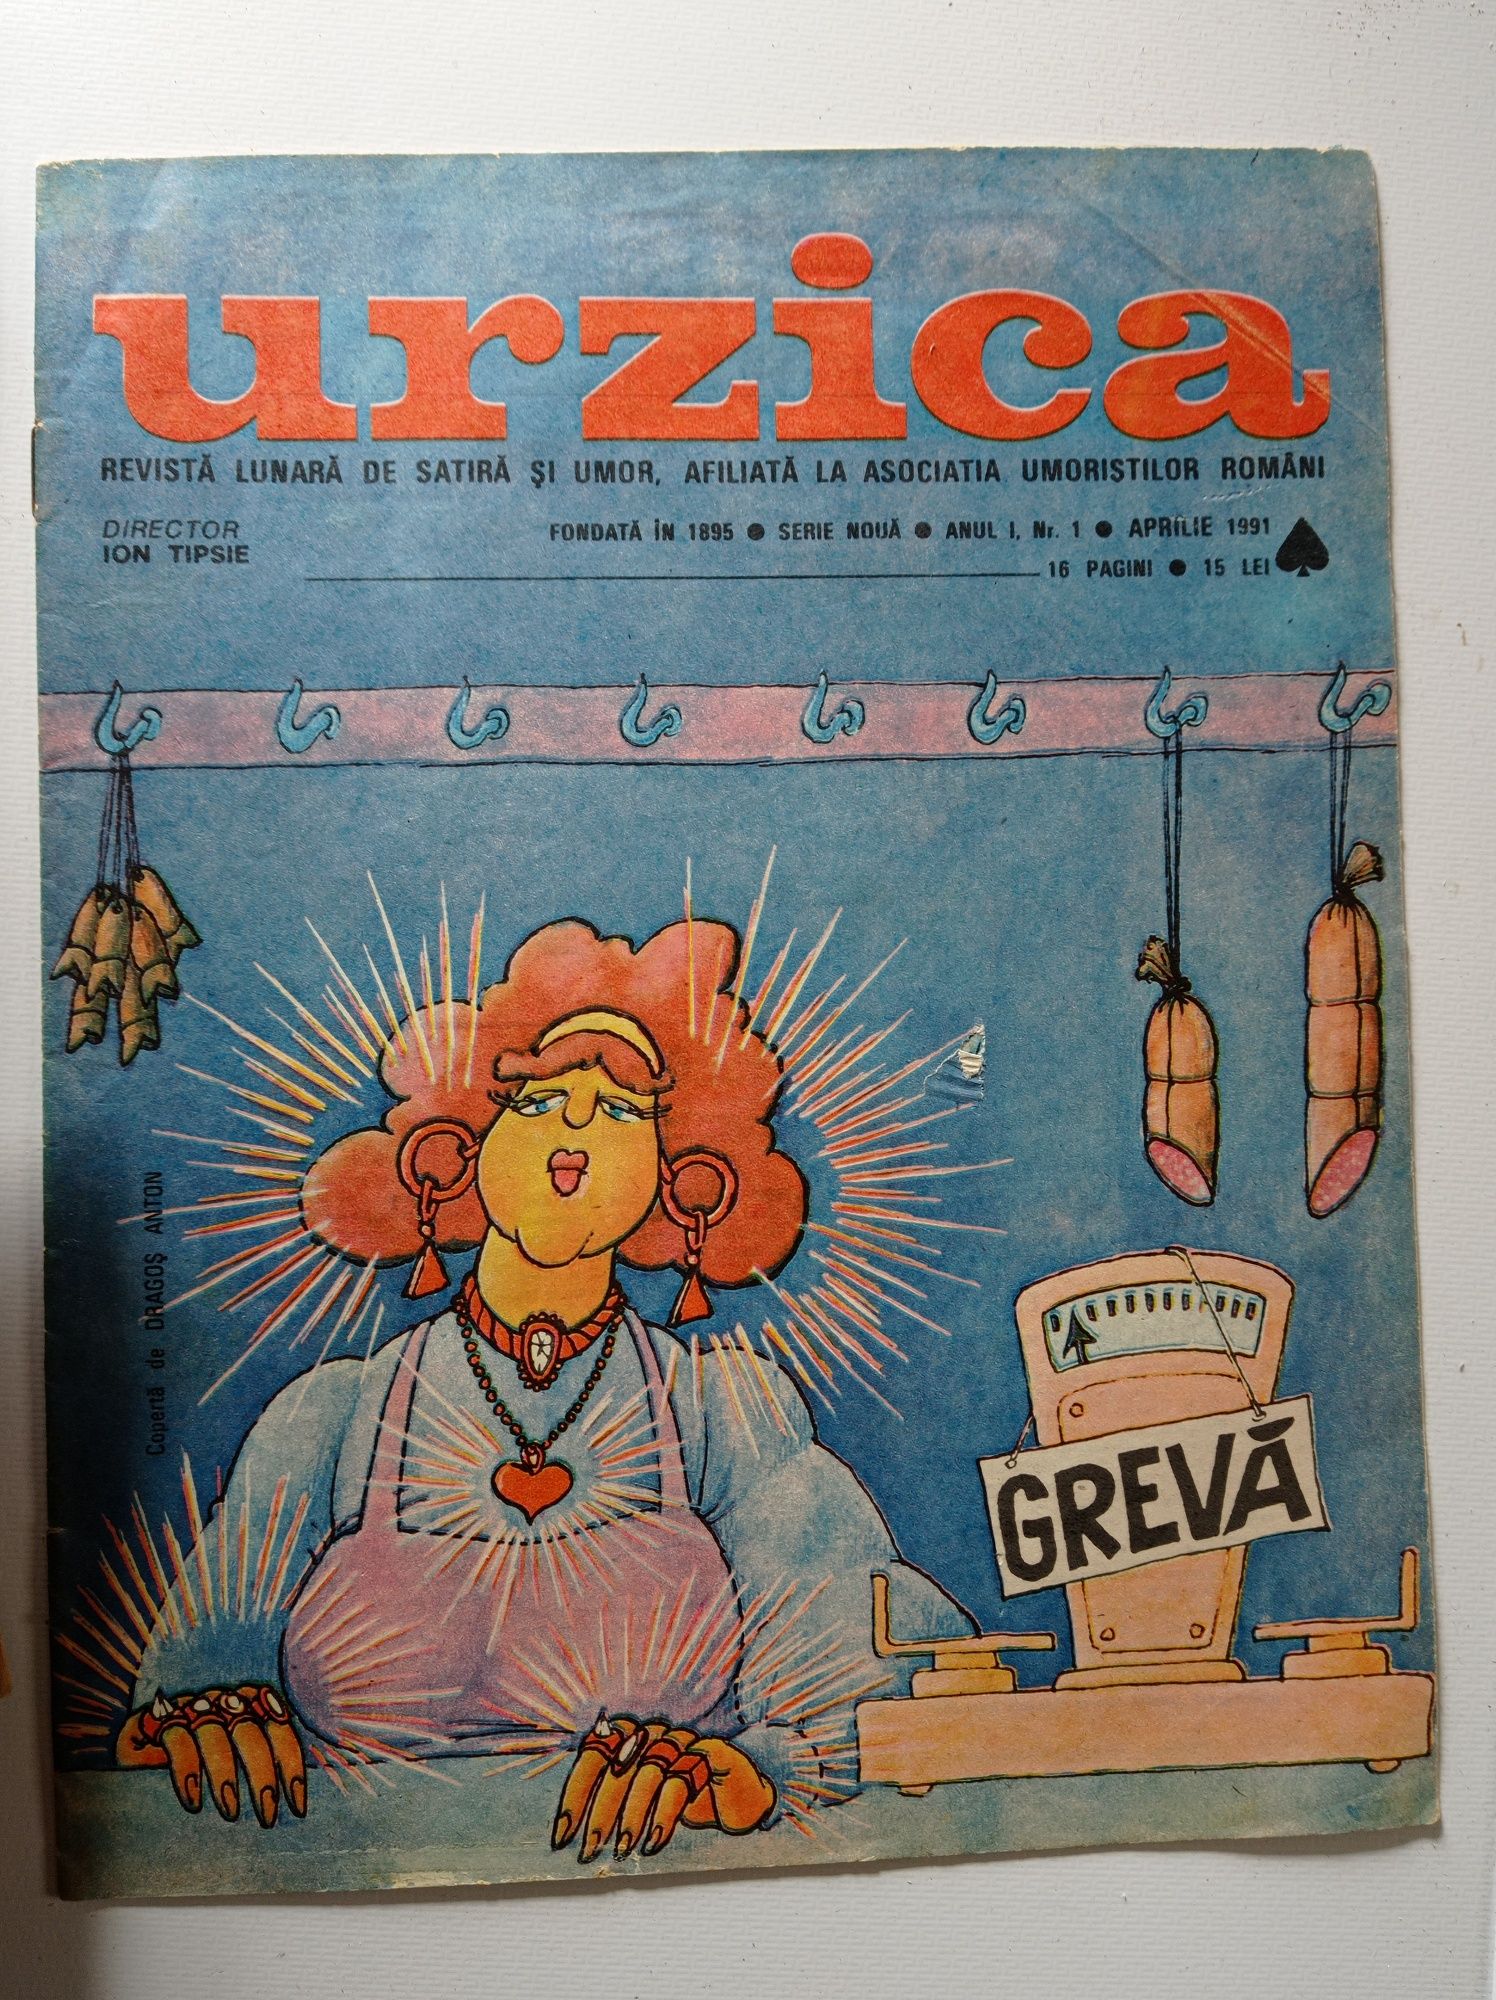 Lot 130 de reviste Urzica, anii 50-90.